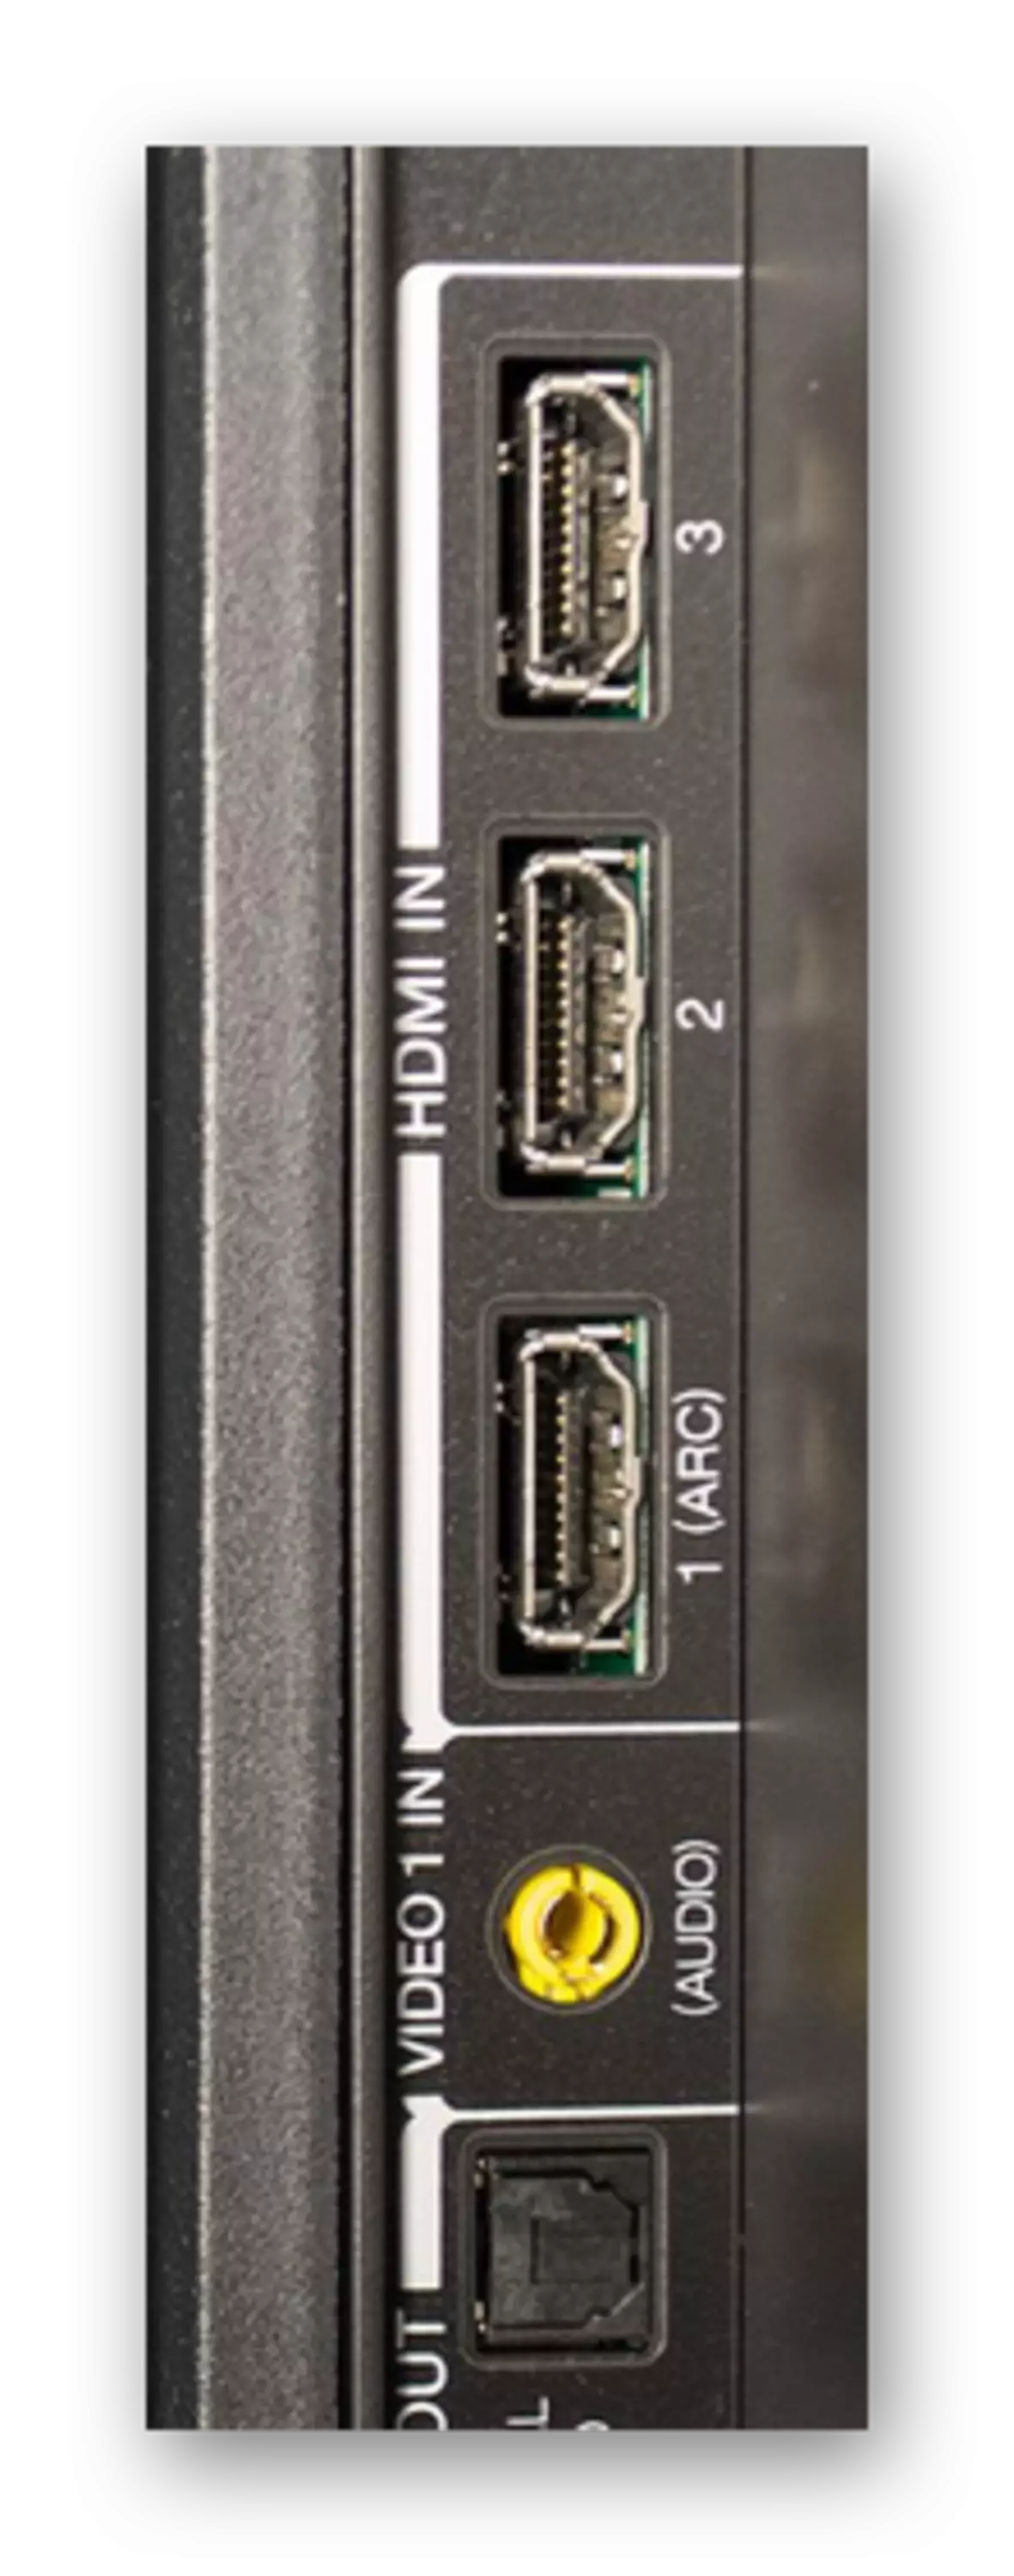 Příklad konektorů HDMI v televizi